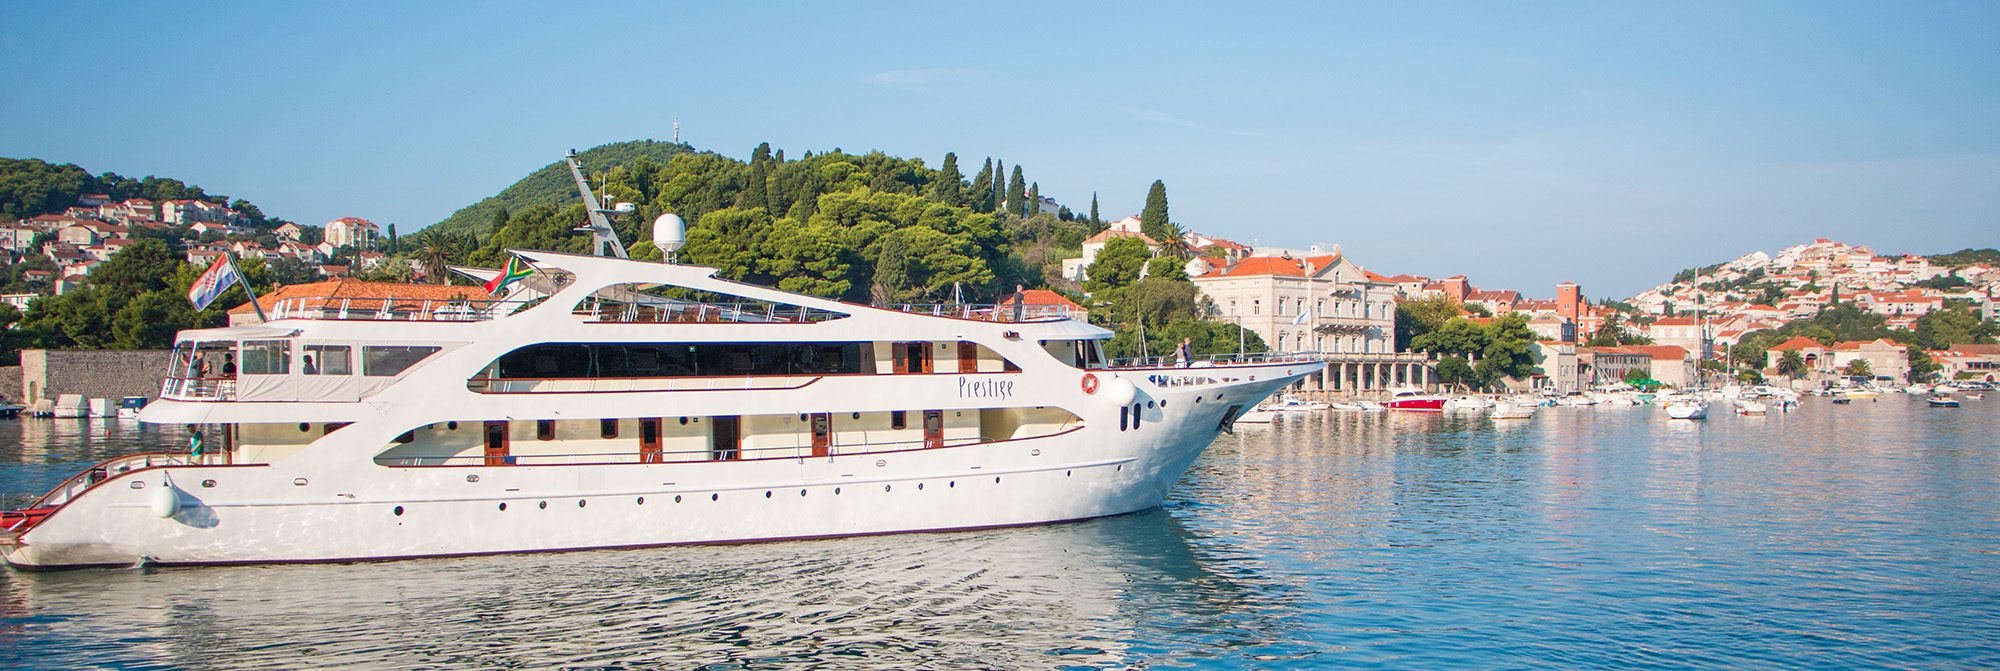 croatia cruise from italy